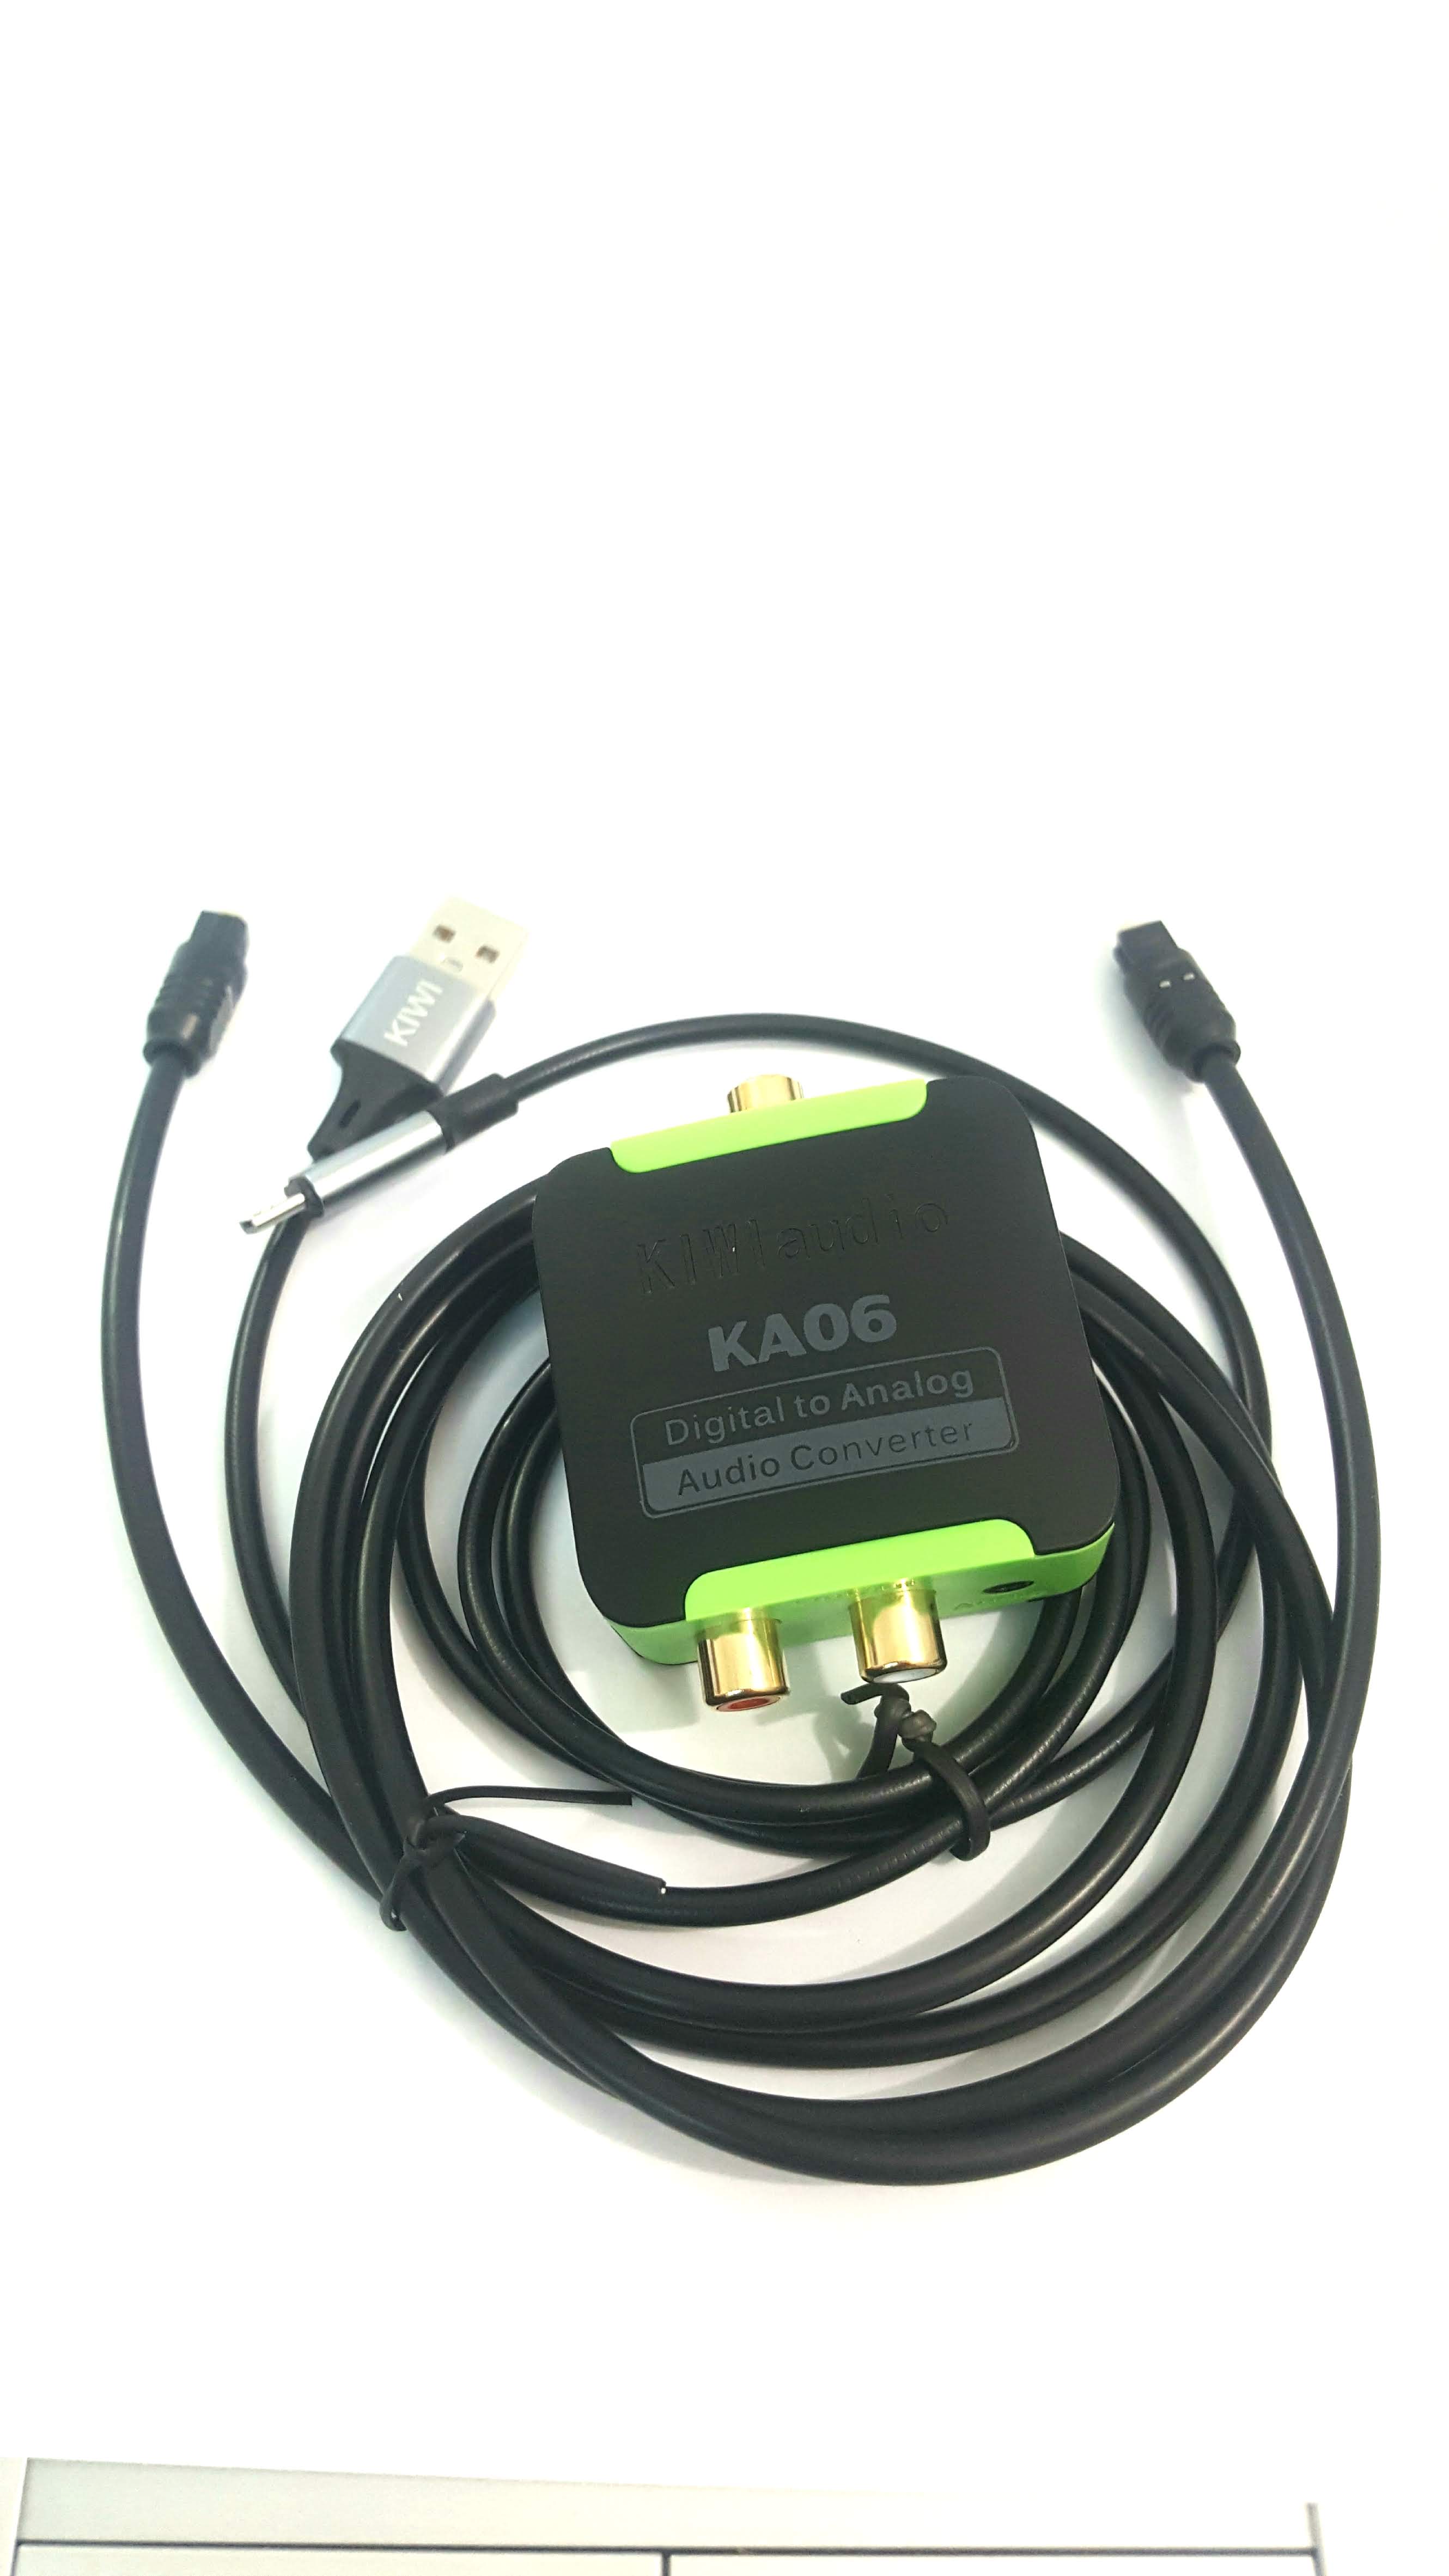 Bộ chuyển âm thanh TV 4K quang optical sang audio AV ra amply KA06-Chính hãng